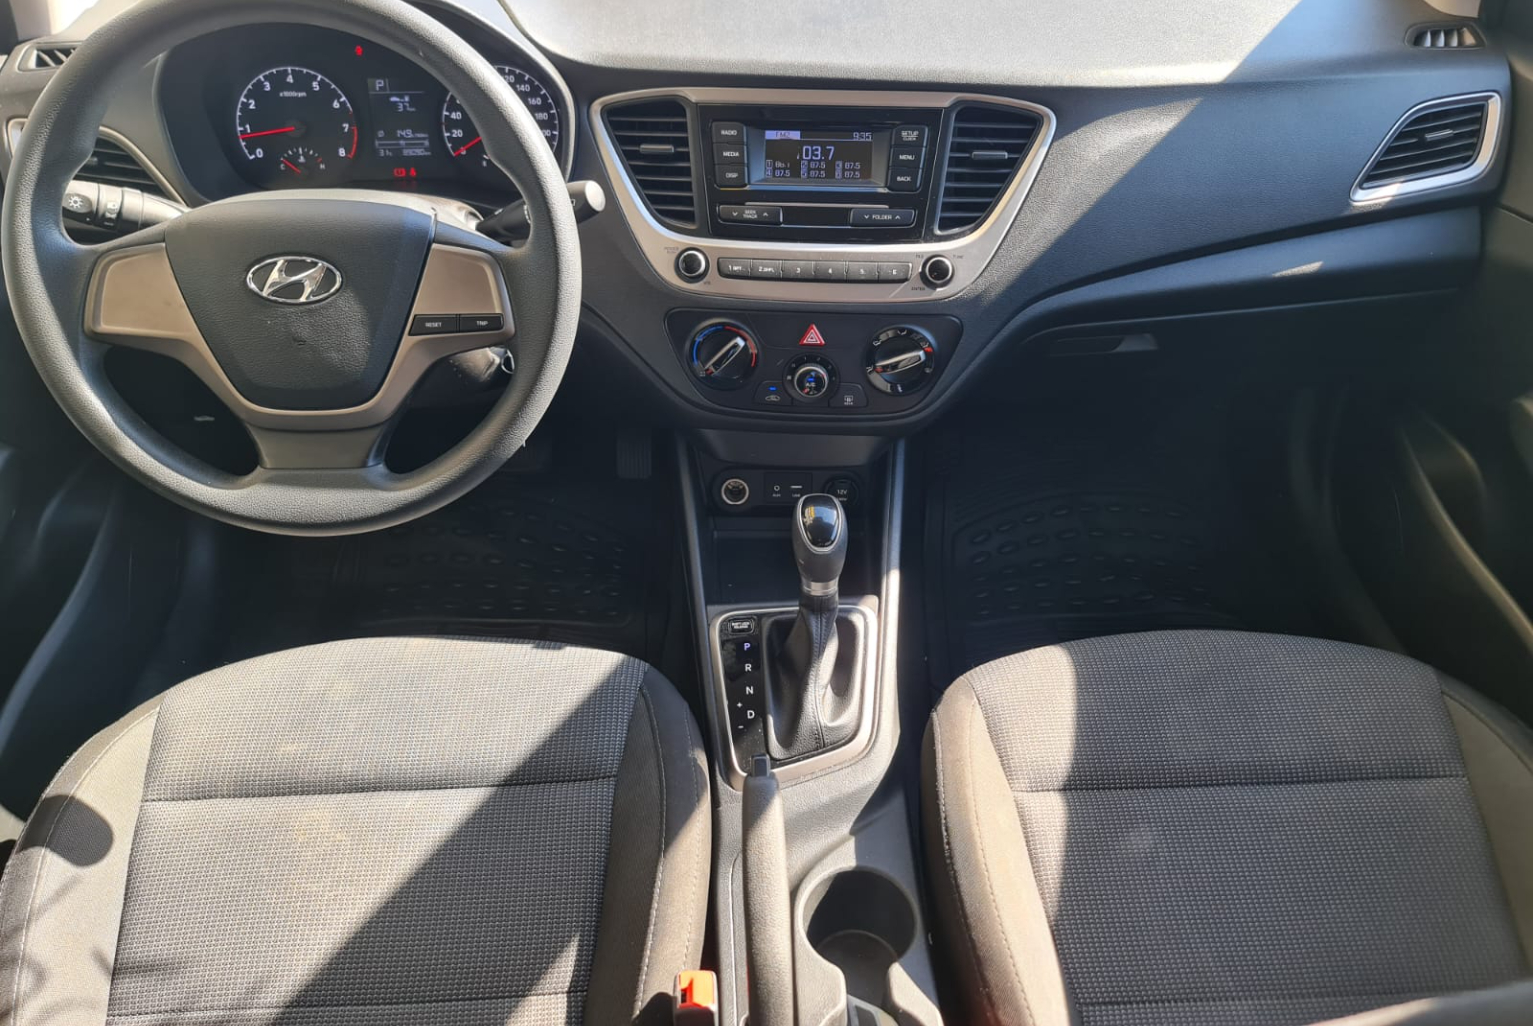 Hyundai Accent 2018 Automático color Plateado, Imagen #9